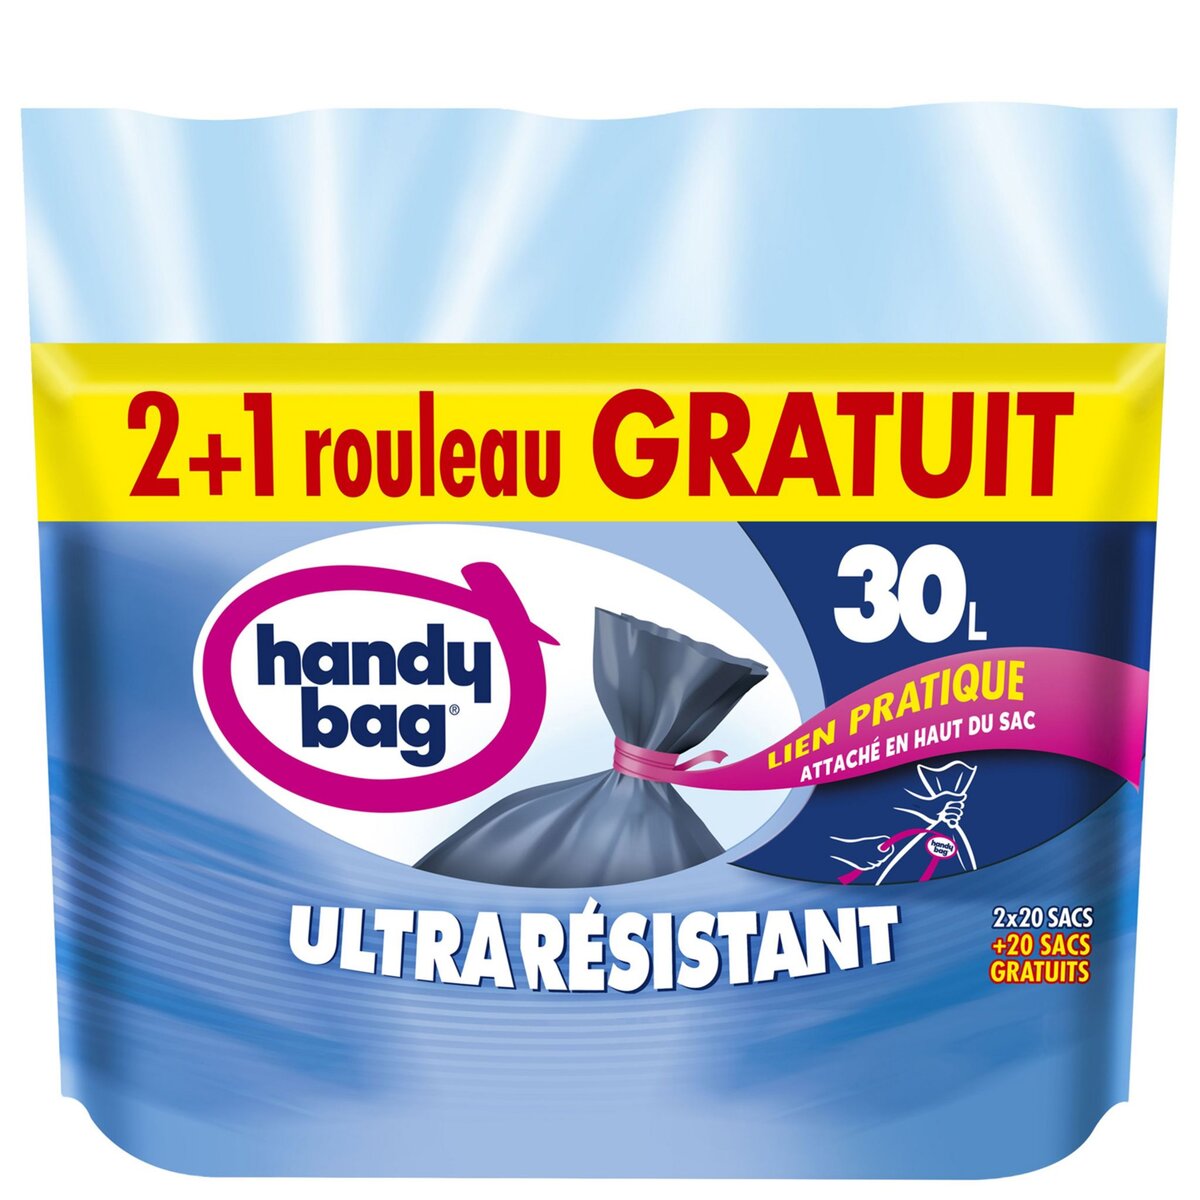 HANDY BAG Sacs poubelle ultra résistant lien pratique 30l 60 sacs